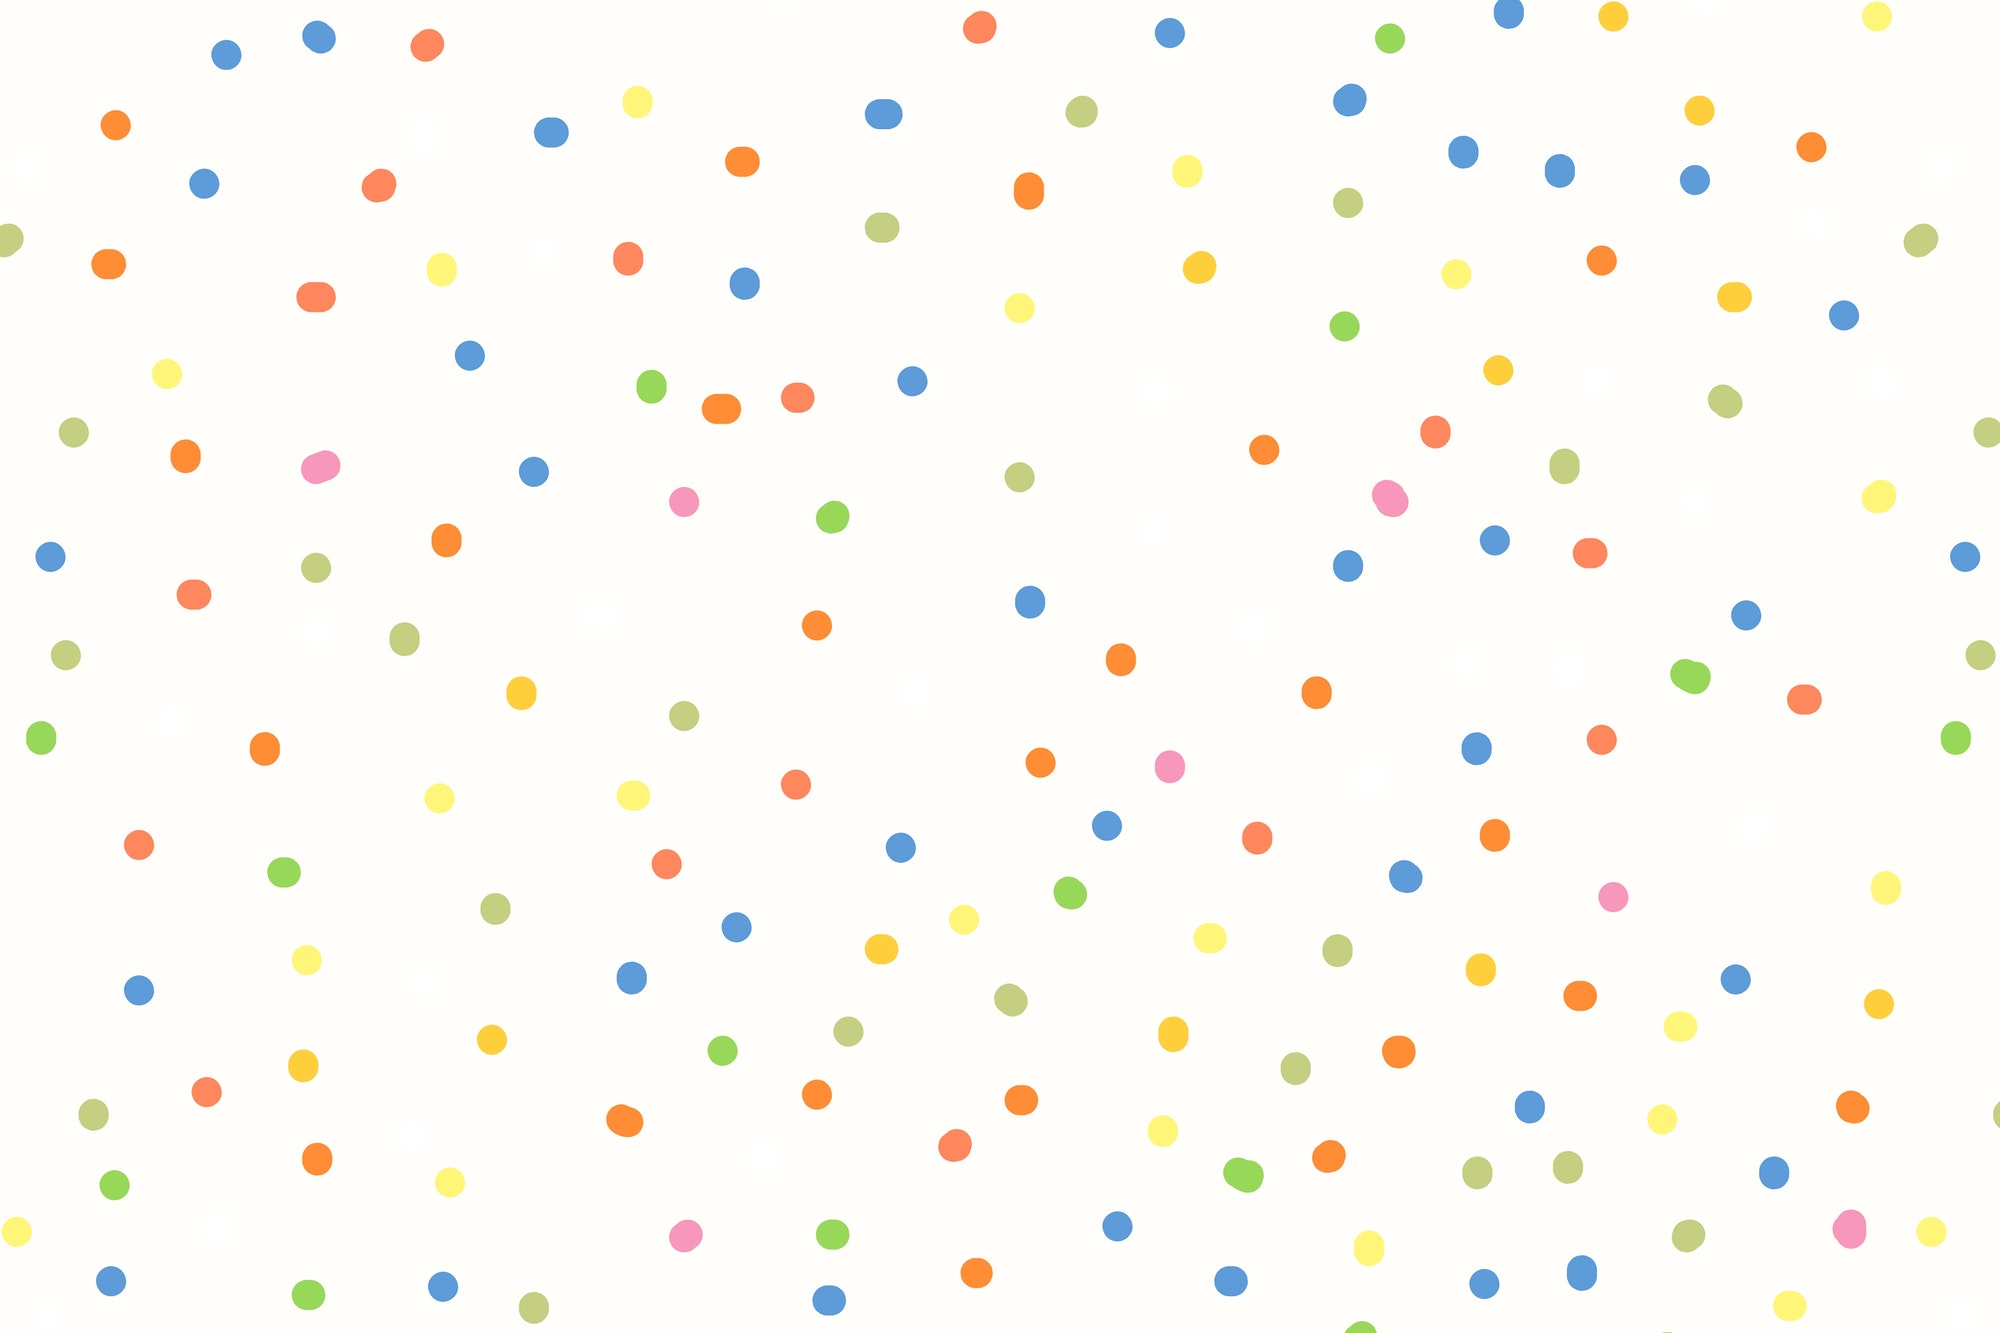 Polka dot pattern background, aesthetic design